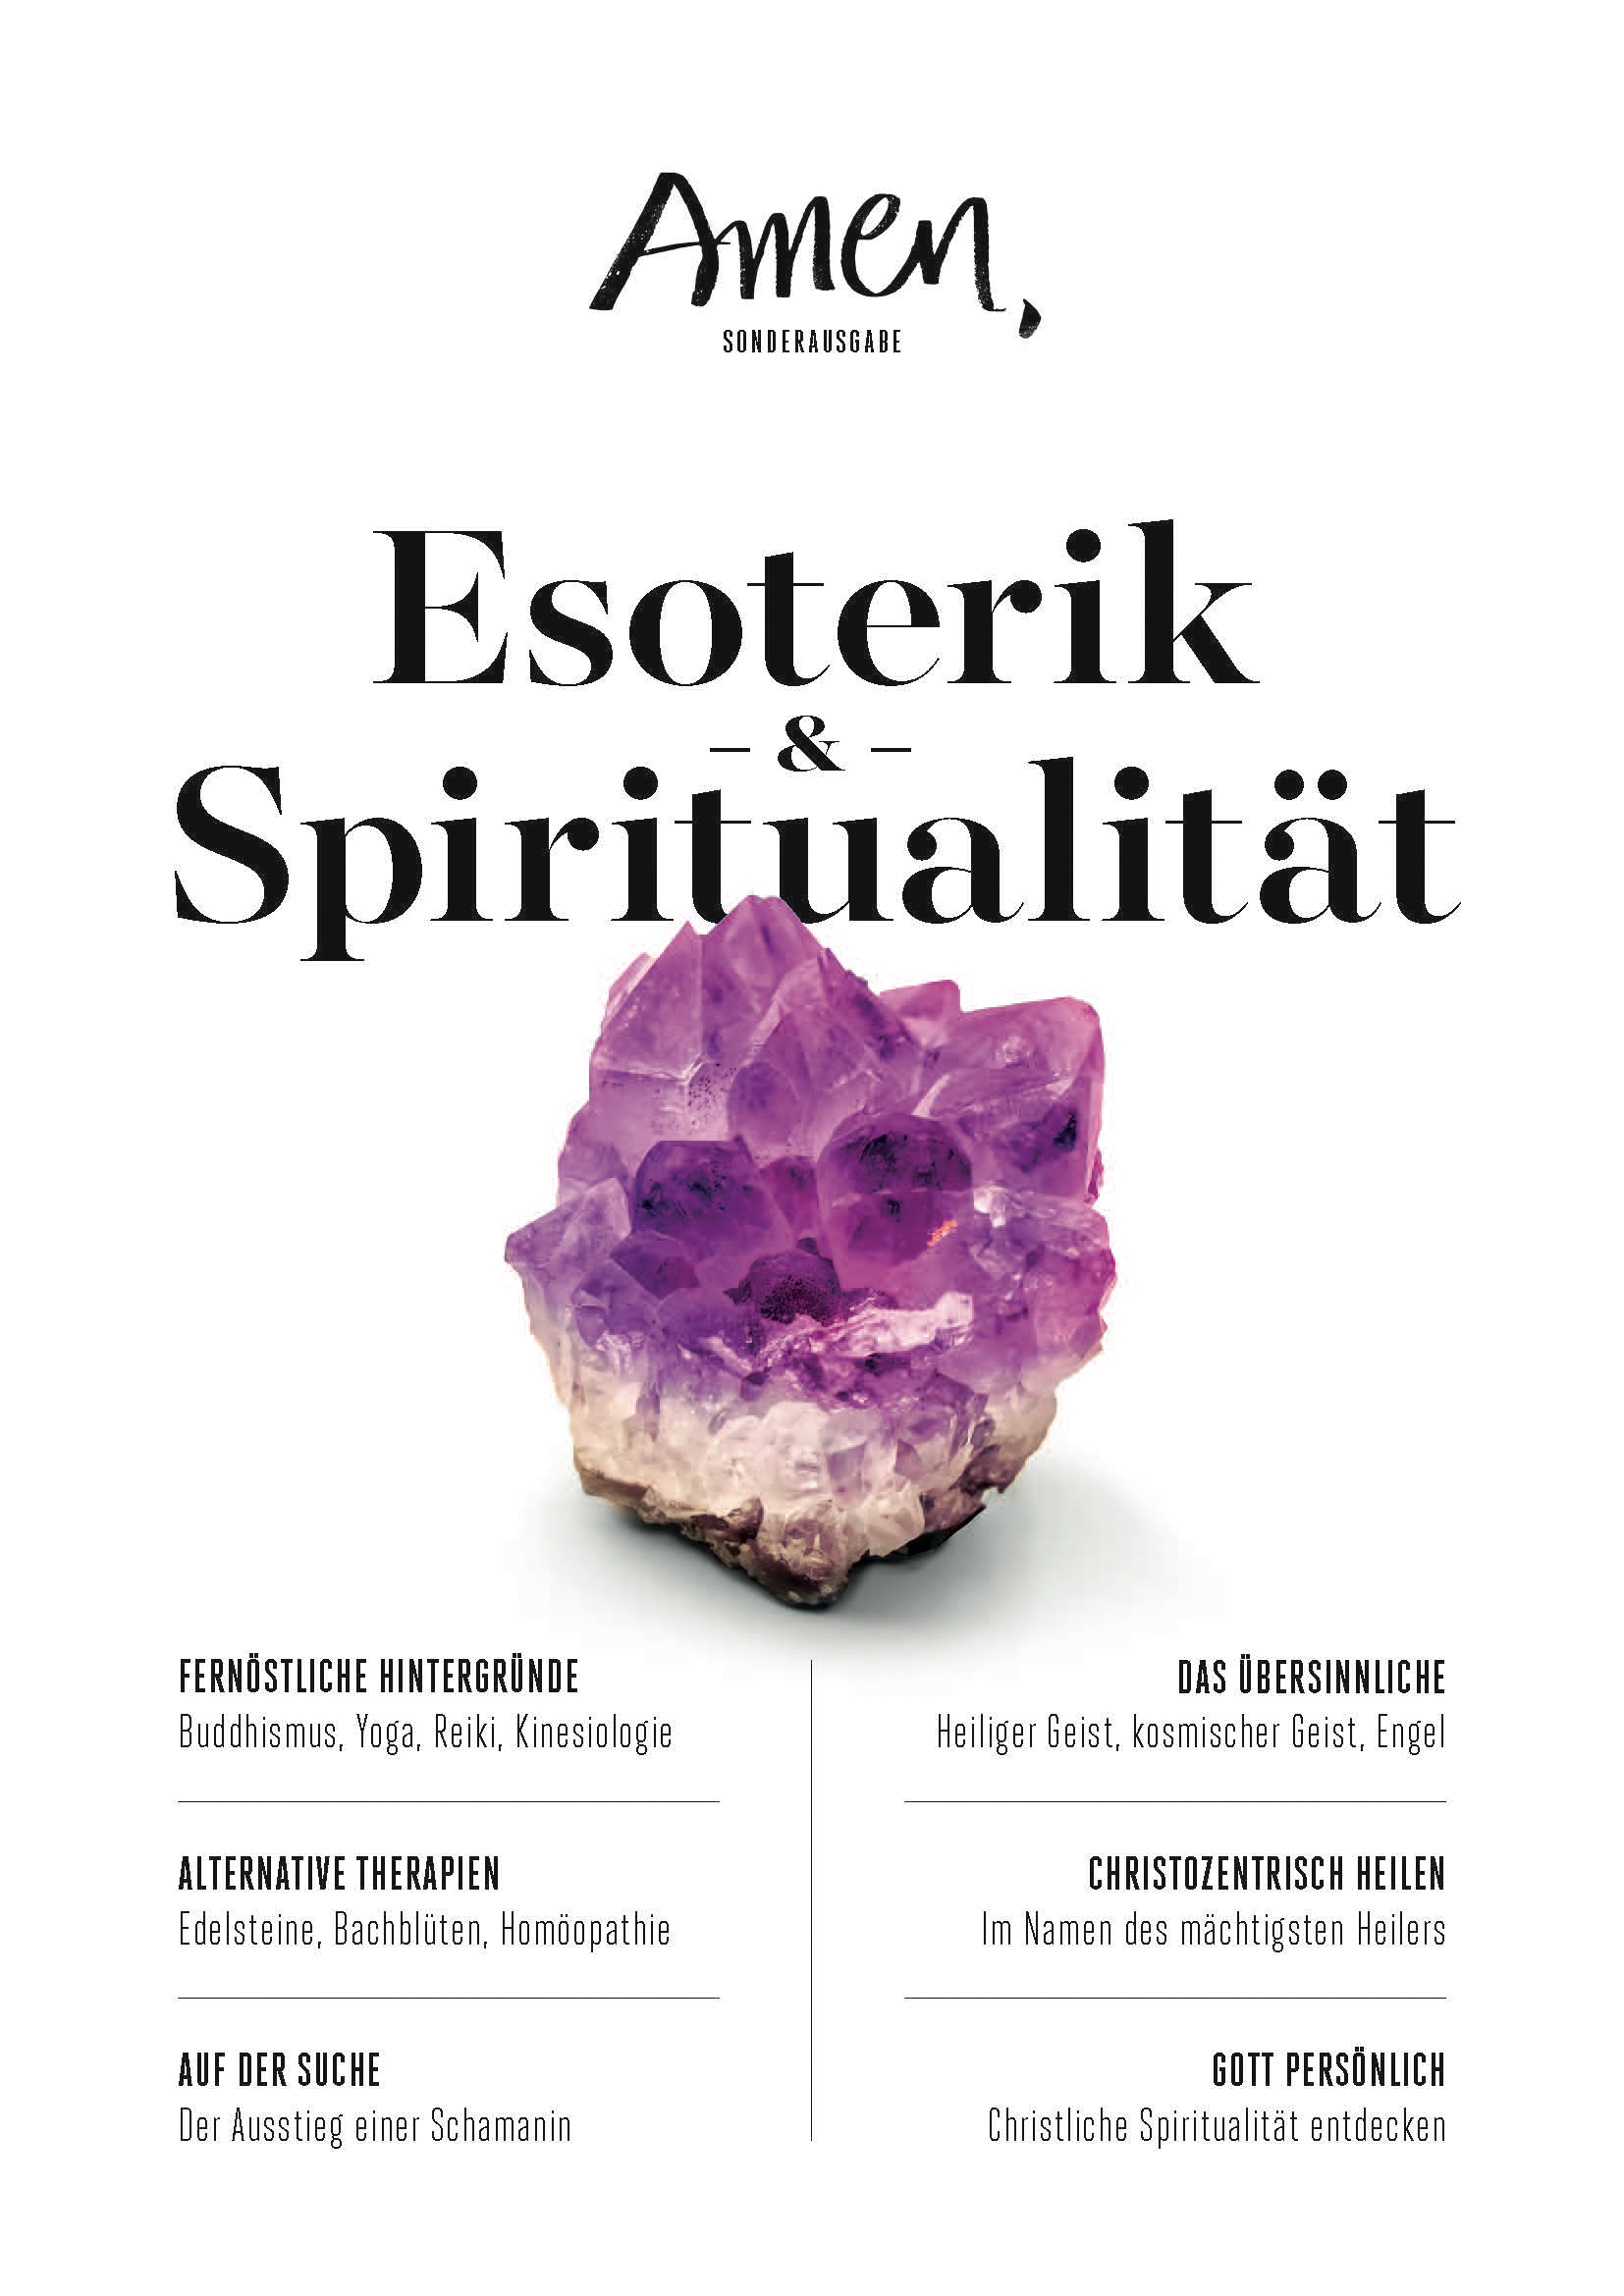 Esoterik und Spiritualität - Amen Magazin (2017) Sonderausgabe